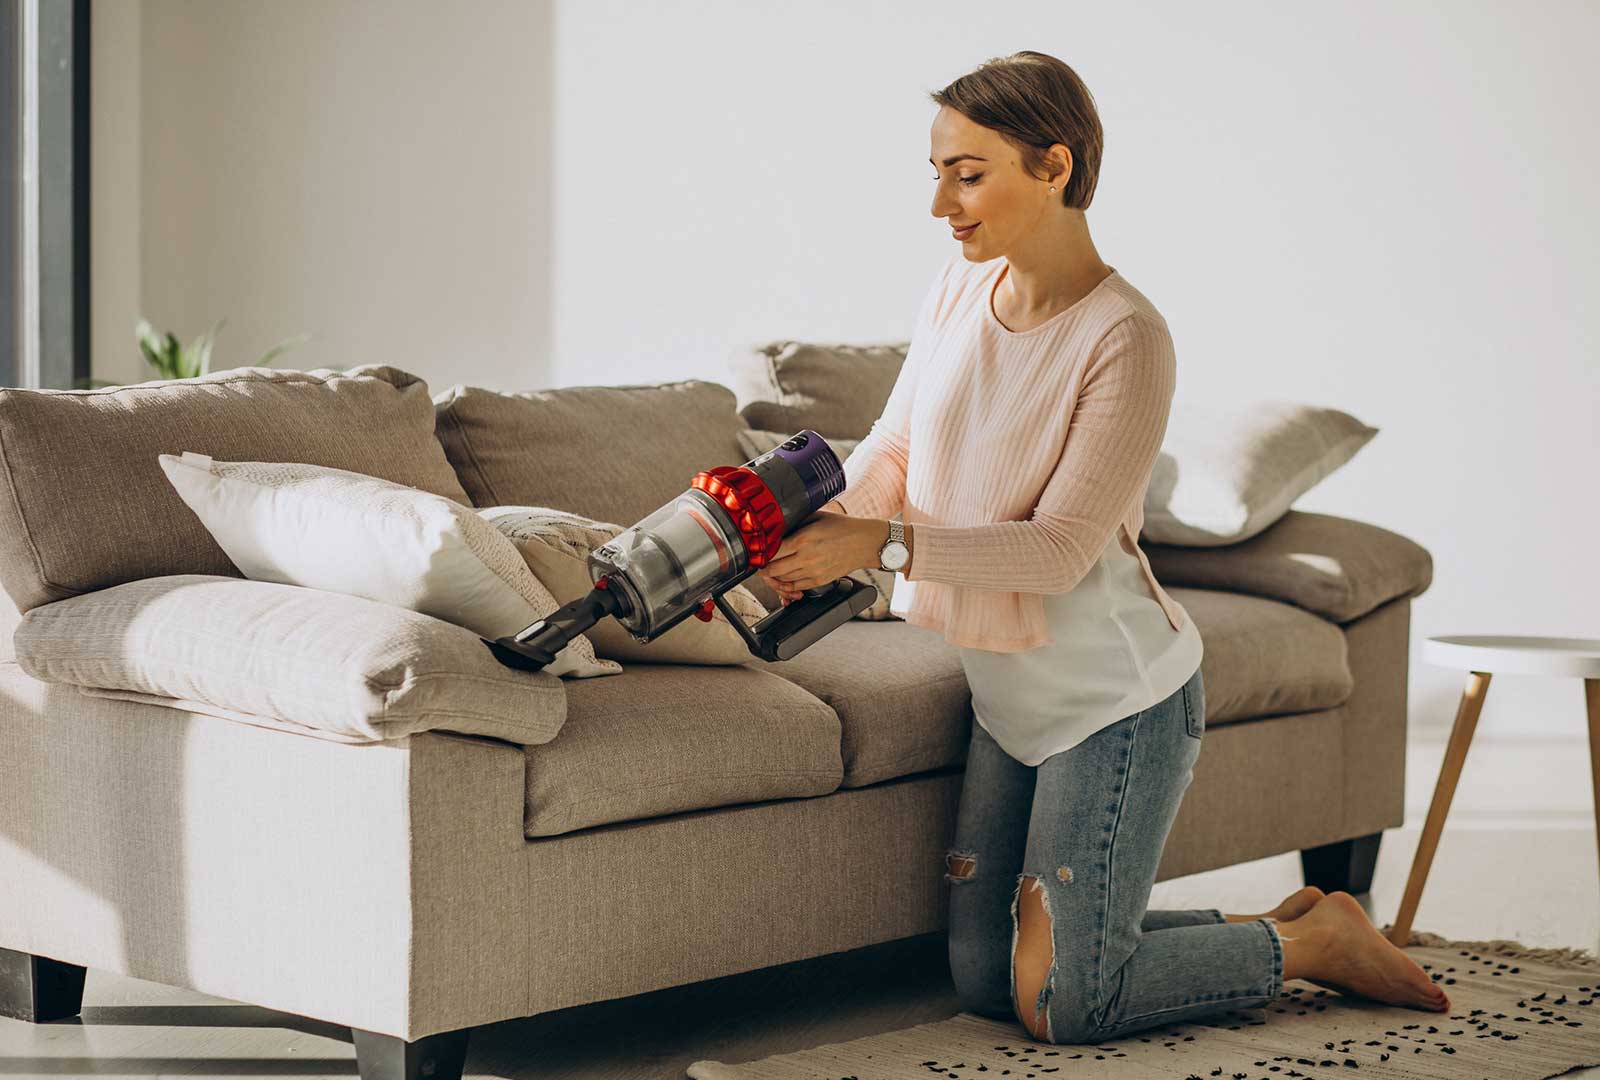 Foto Una persona que usa una aspiradora para limpiar un sofá